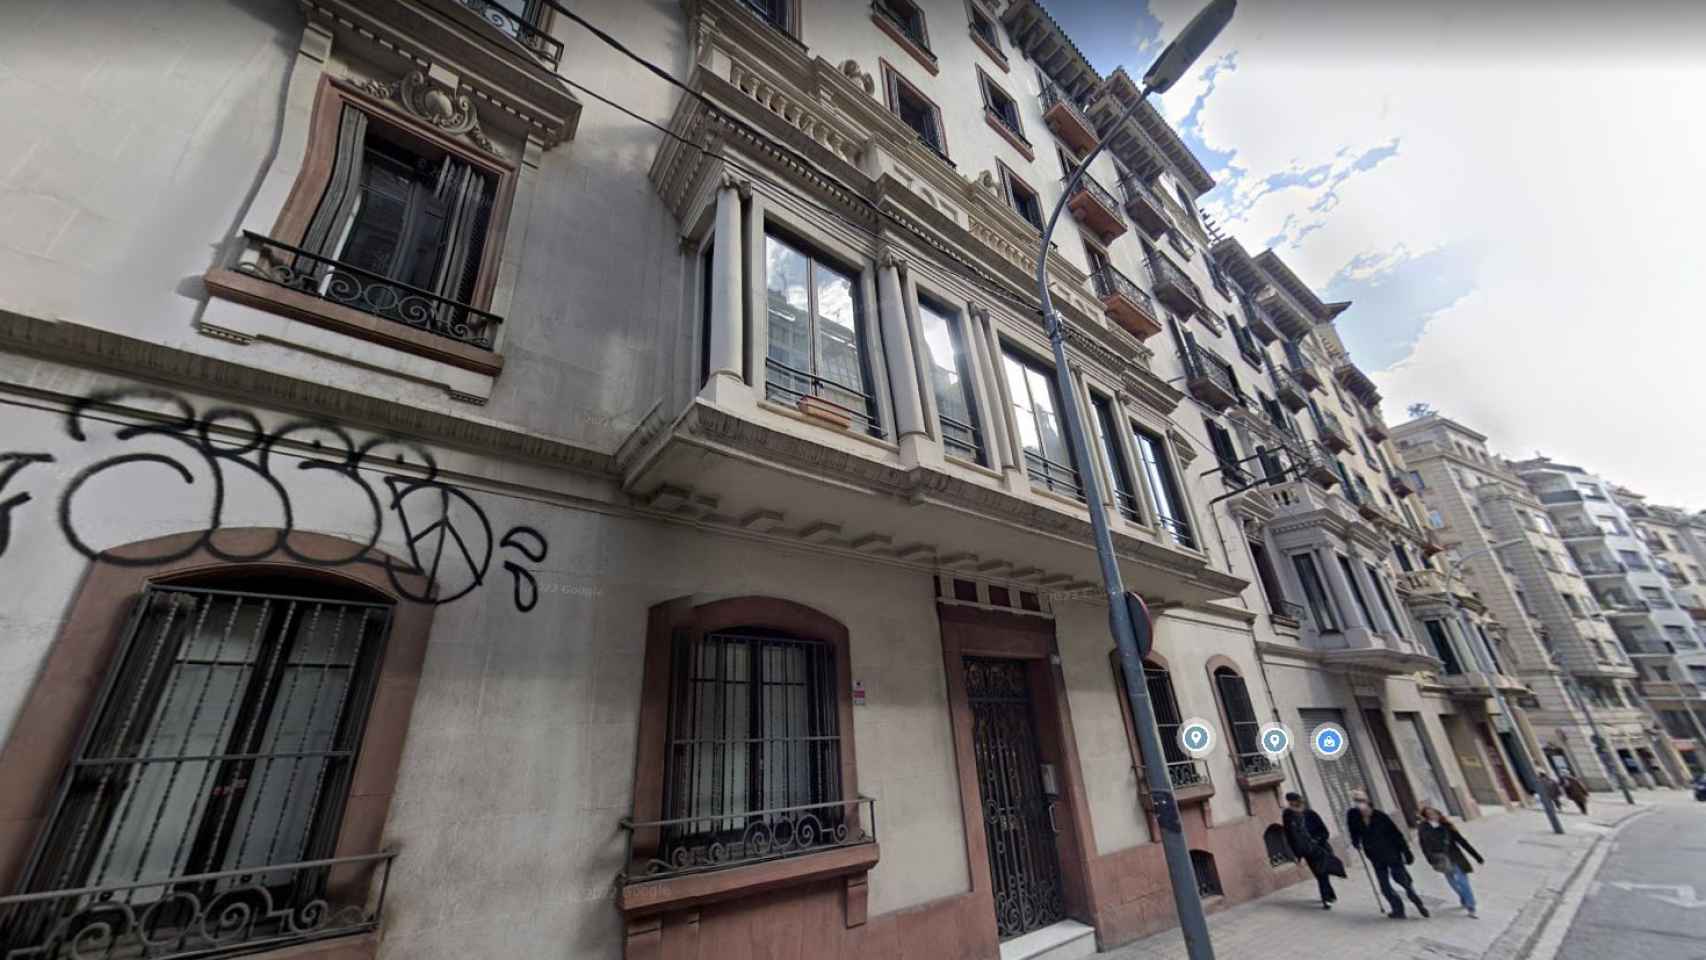 Oficinas de Tote Vignau SL en la calle Balmes de Barcelona / CG